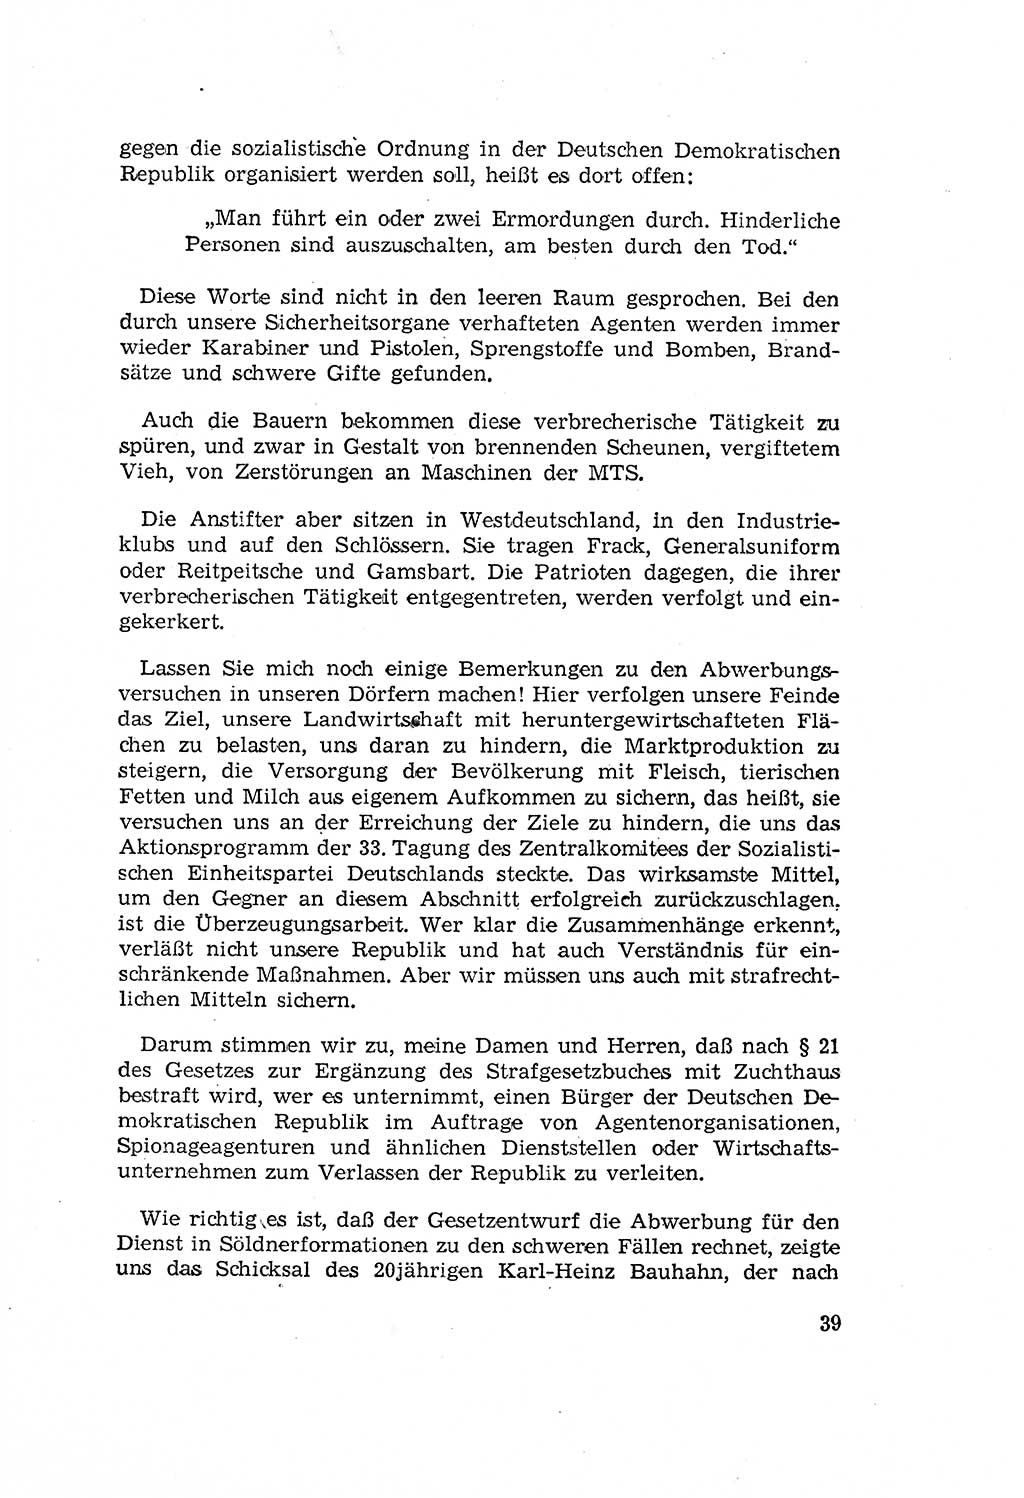 Zum Erlaß des Gesetzes zur Ergänzung des Strafgesetzbuches (StGB), Strafergänzungsgesetz (StEG) [Deutsche Demokratische Republik (DDR)] 1957, Seite 39 (StGB StEG DDR 1957, S. 39)